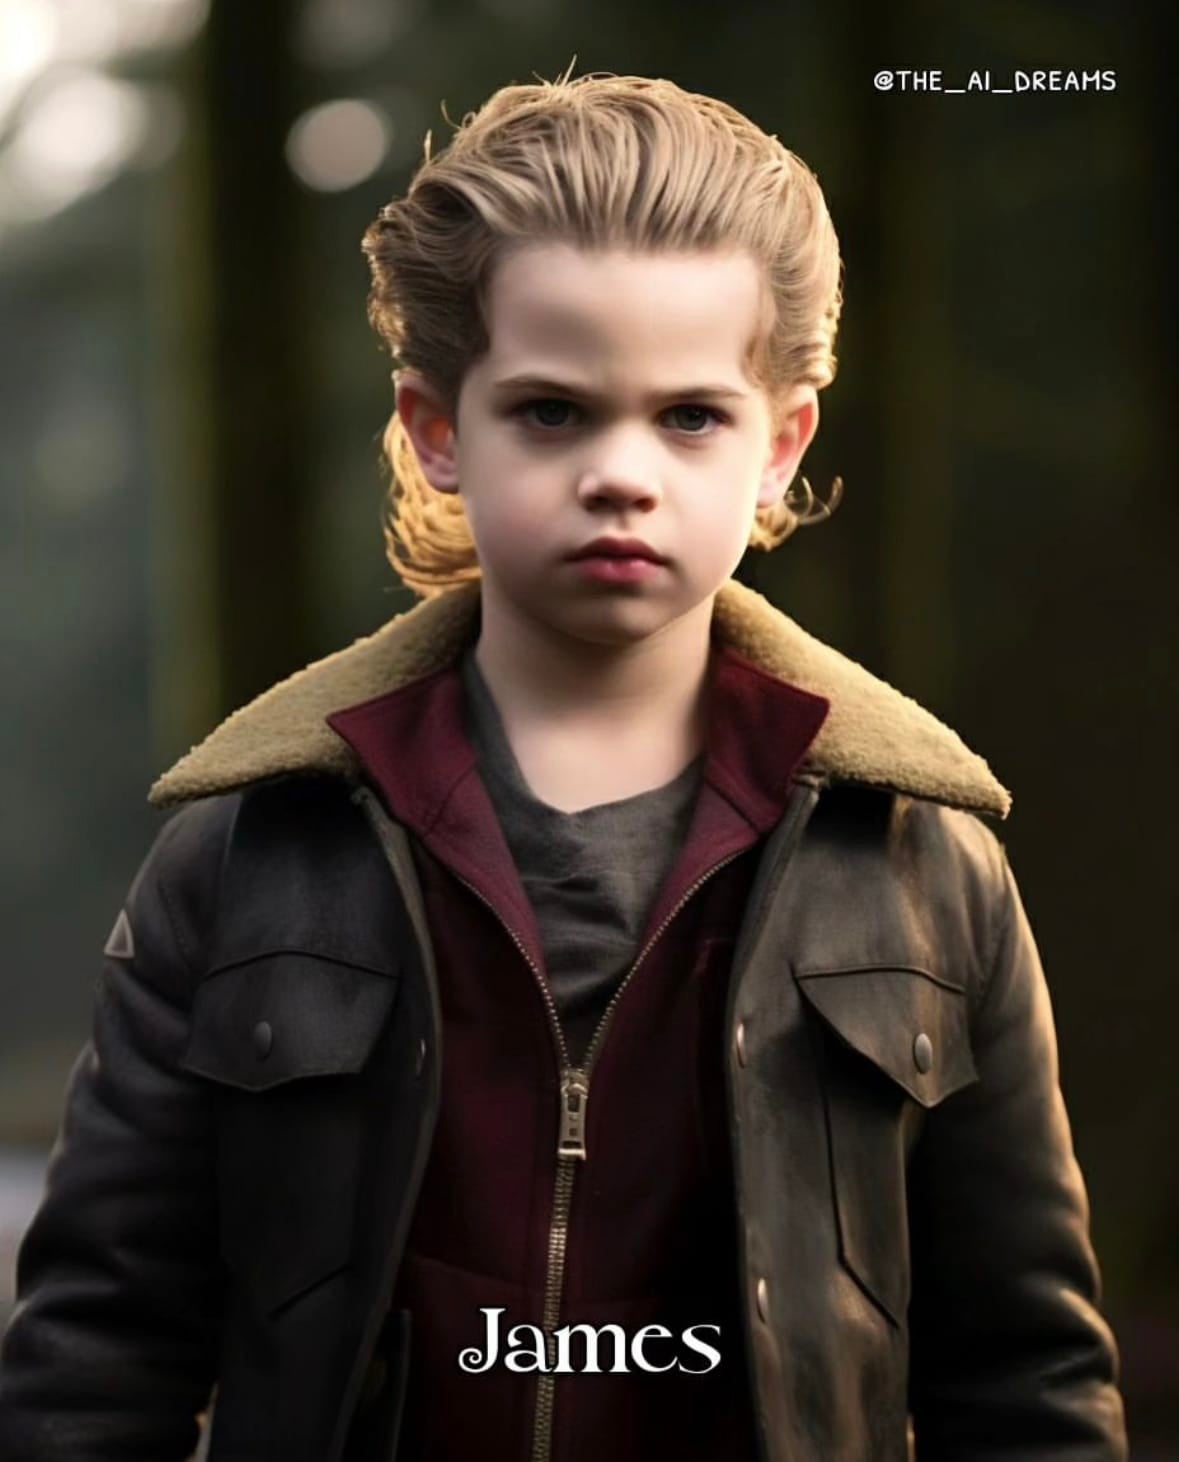 ภาพตัวละคร แวมไพร์ ทไวไลท์ twilight ตอนเด็ก วัยรุ่นฟันน้ำนม aiart